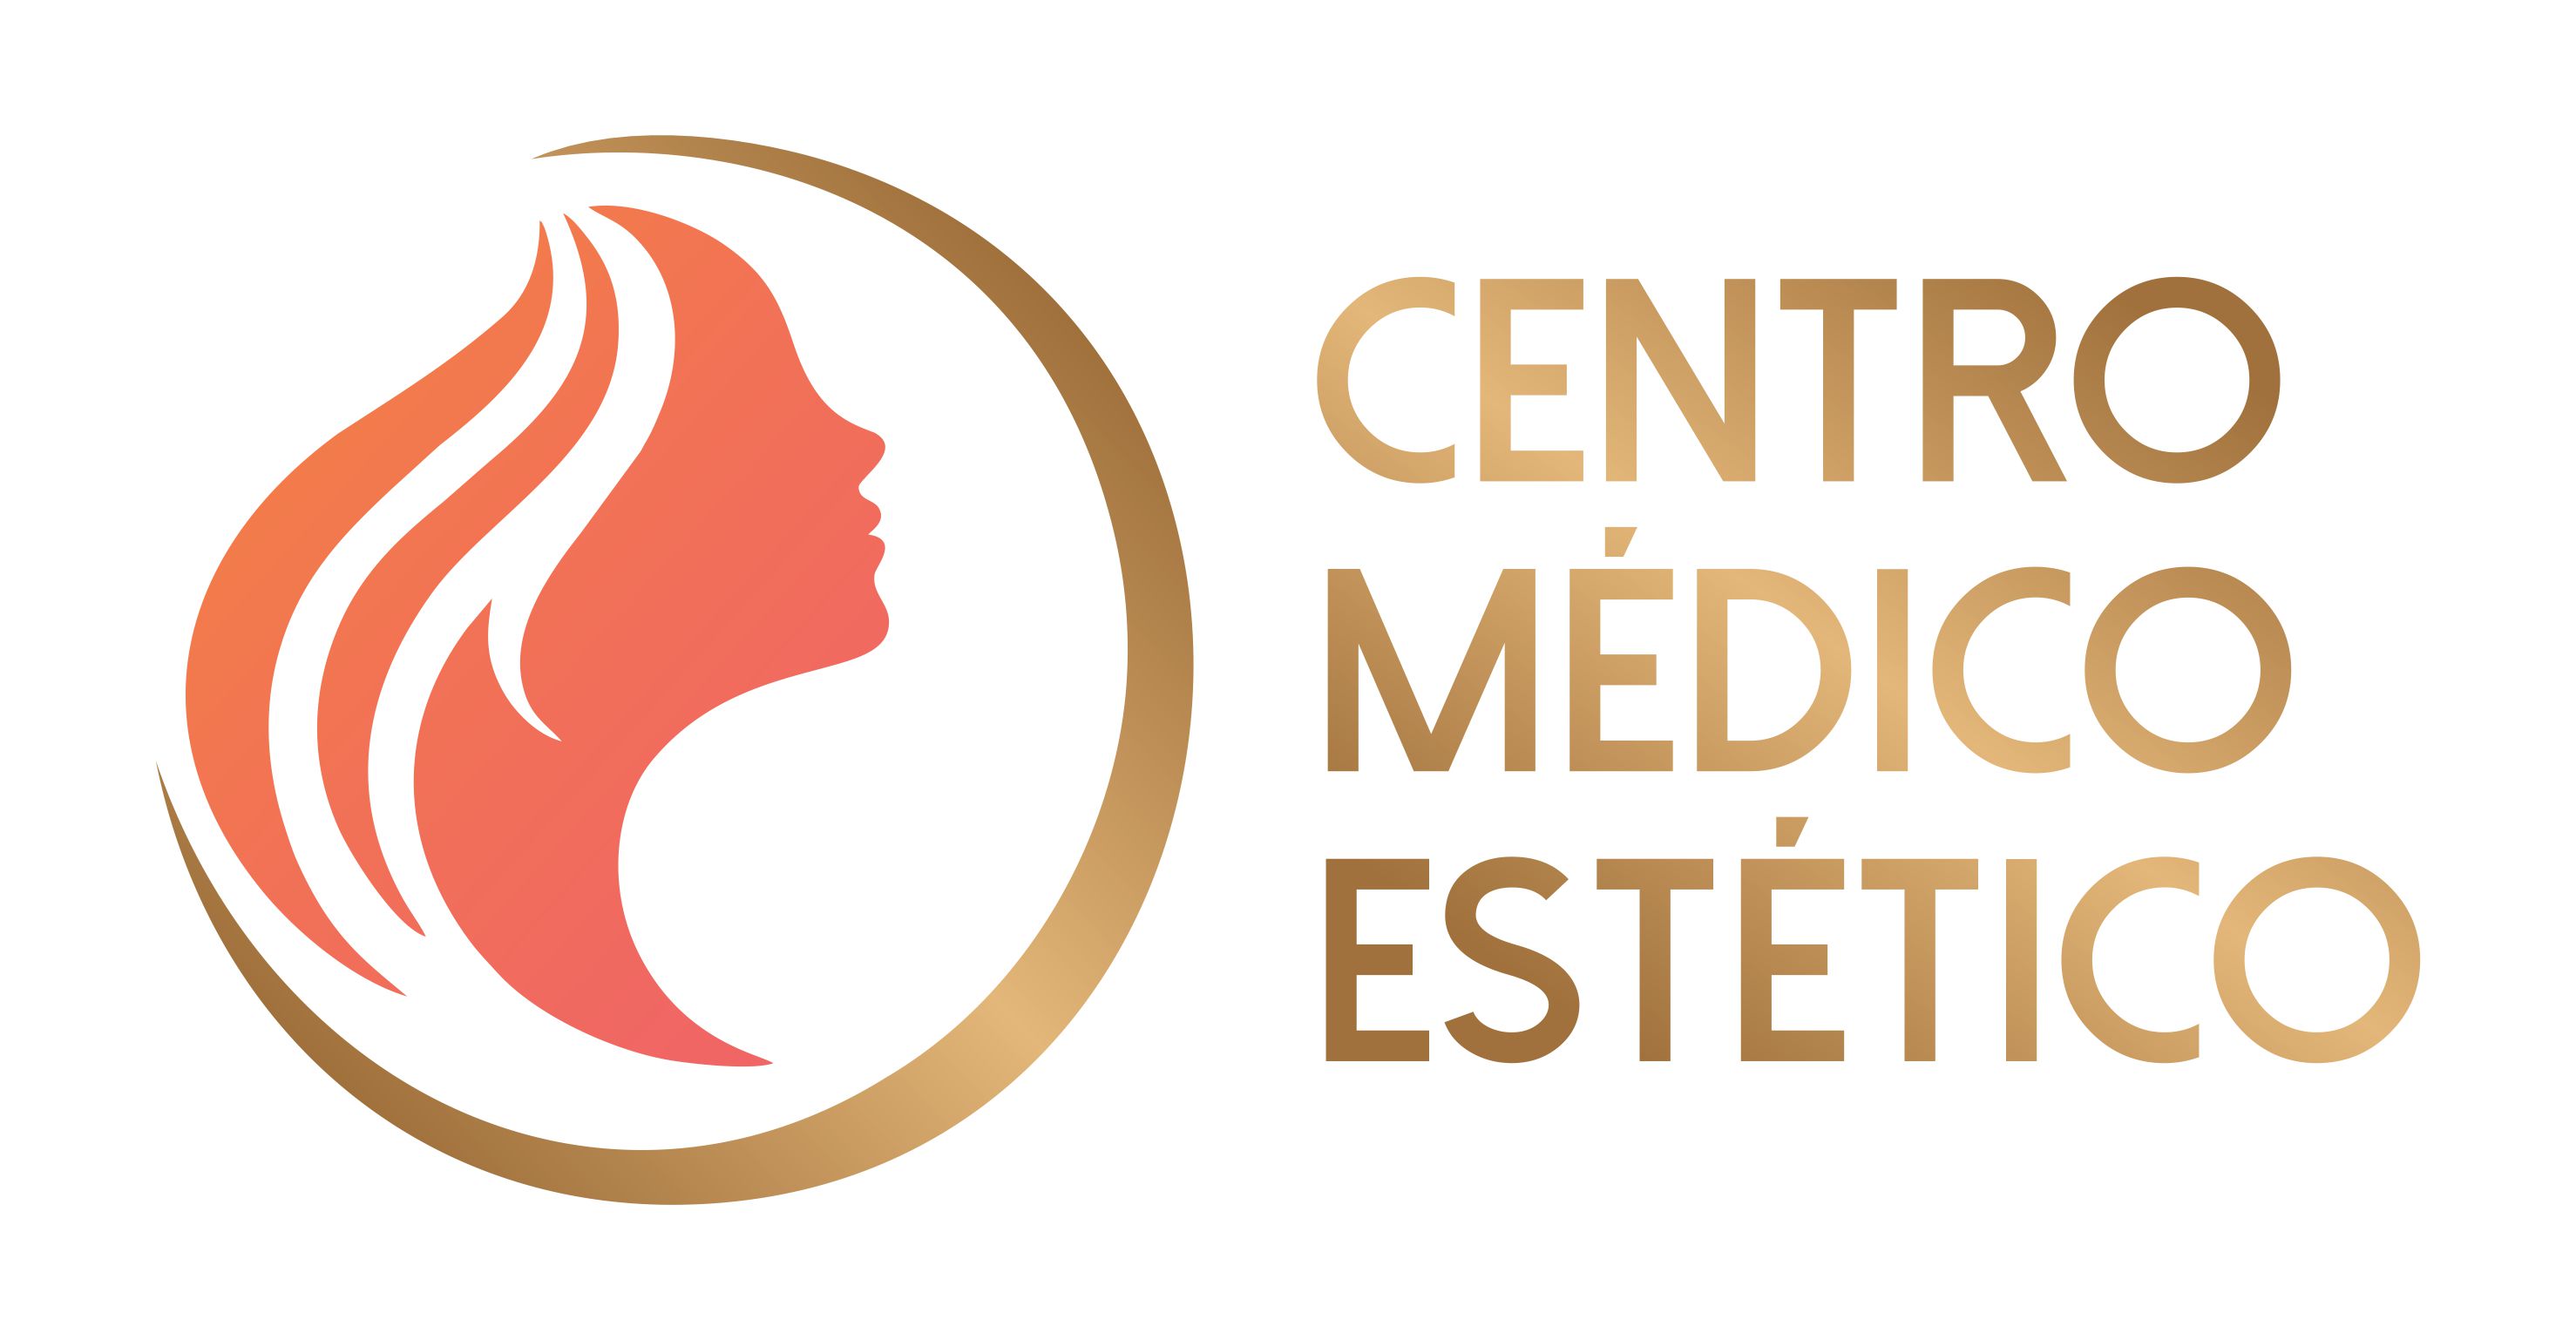 CENTRO MEDICO ESTETICO logo